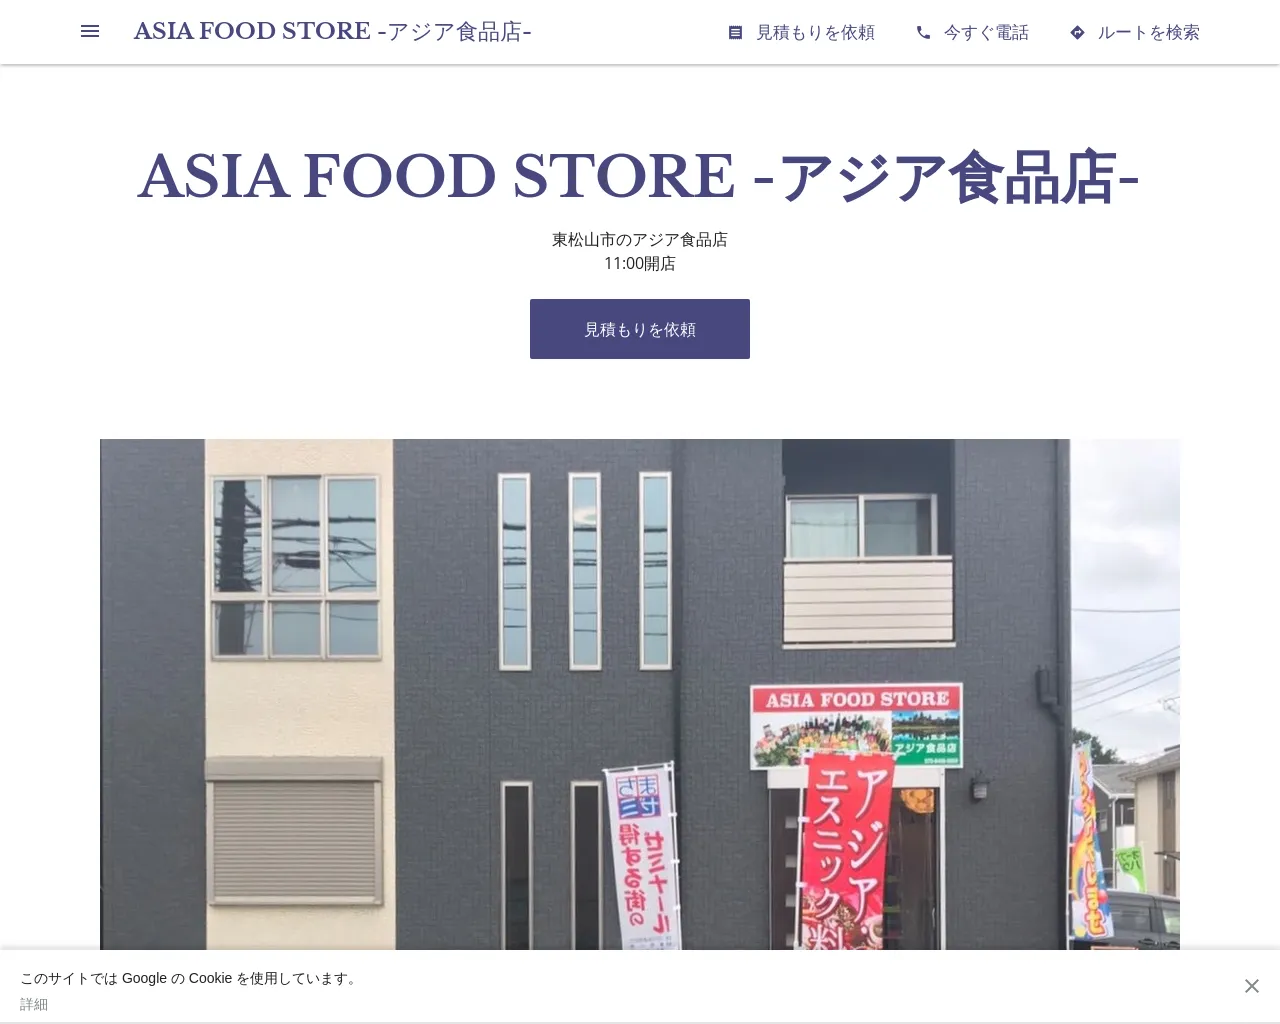 ASIA FOOD STORE -アジア食品店- site